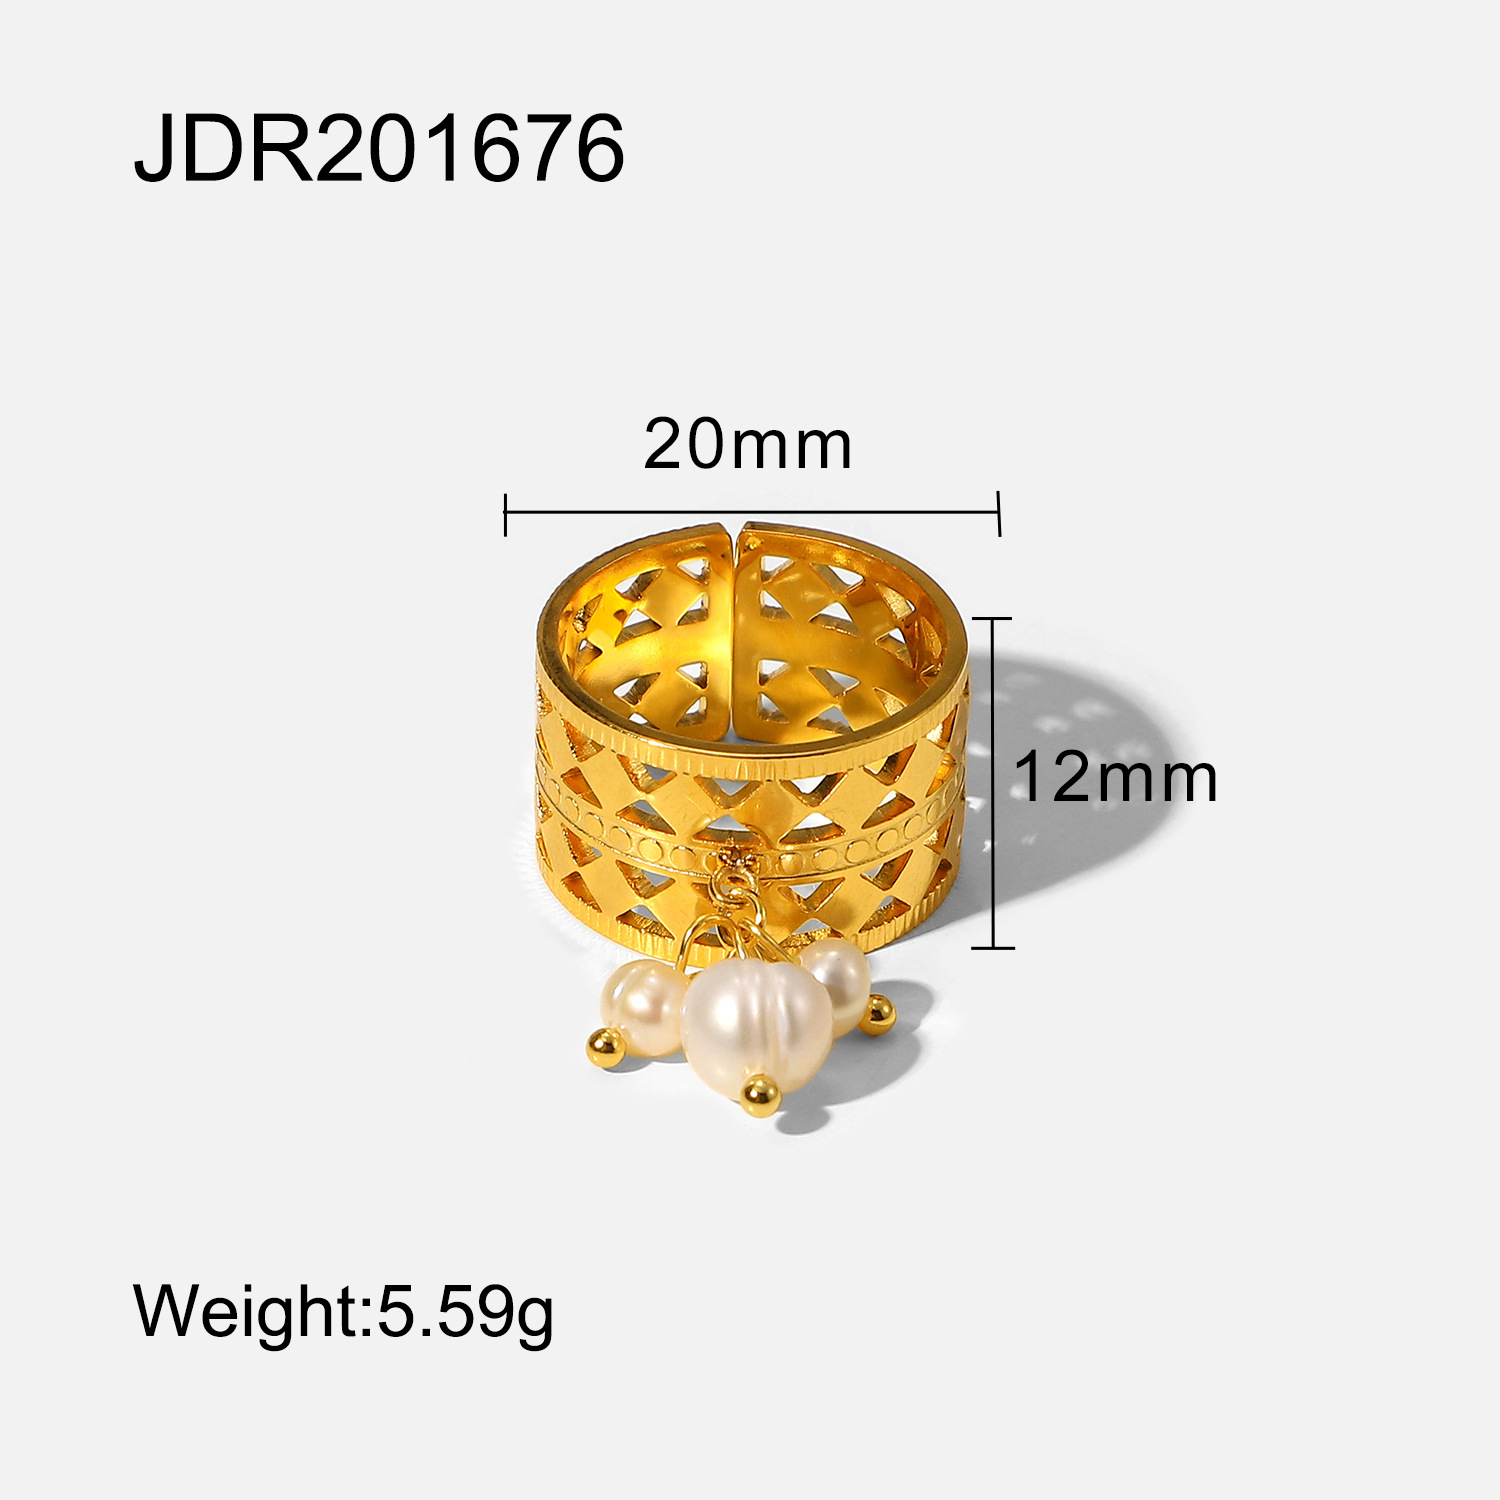 JDR201676